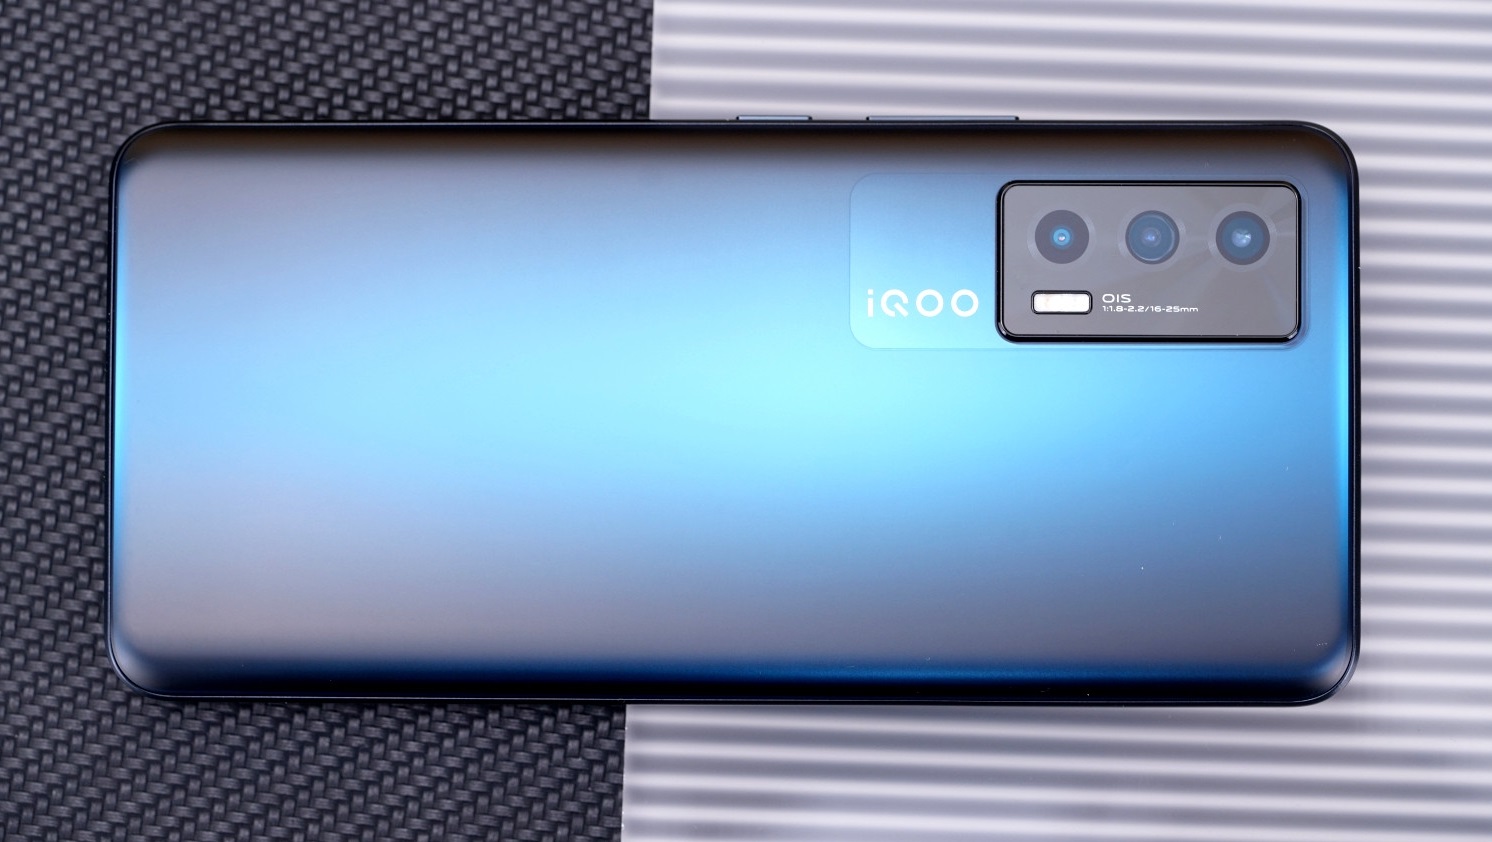 Vivo выпускает в продажу смартфон iQOO Neo5 с 120 Гц дисплеем и Snapdragon 870 на китайском рынке